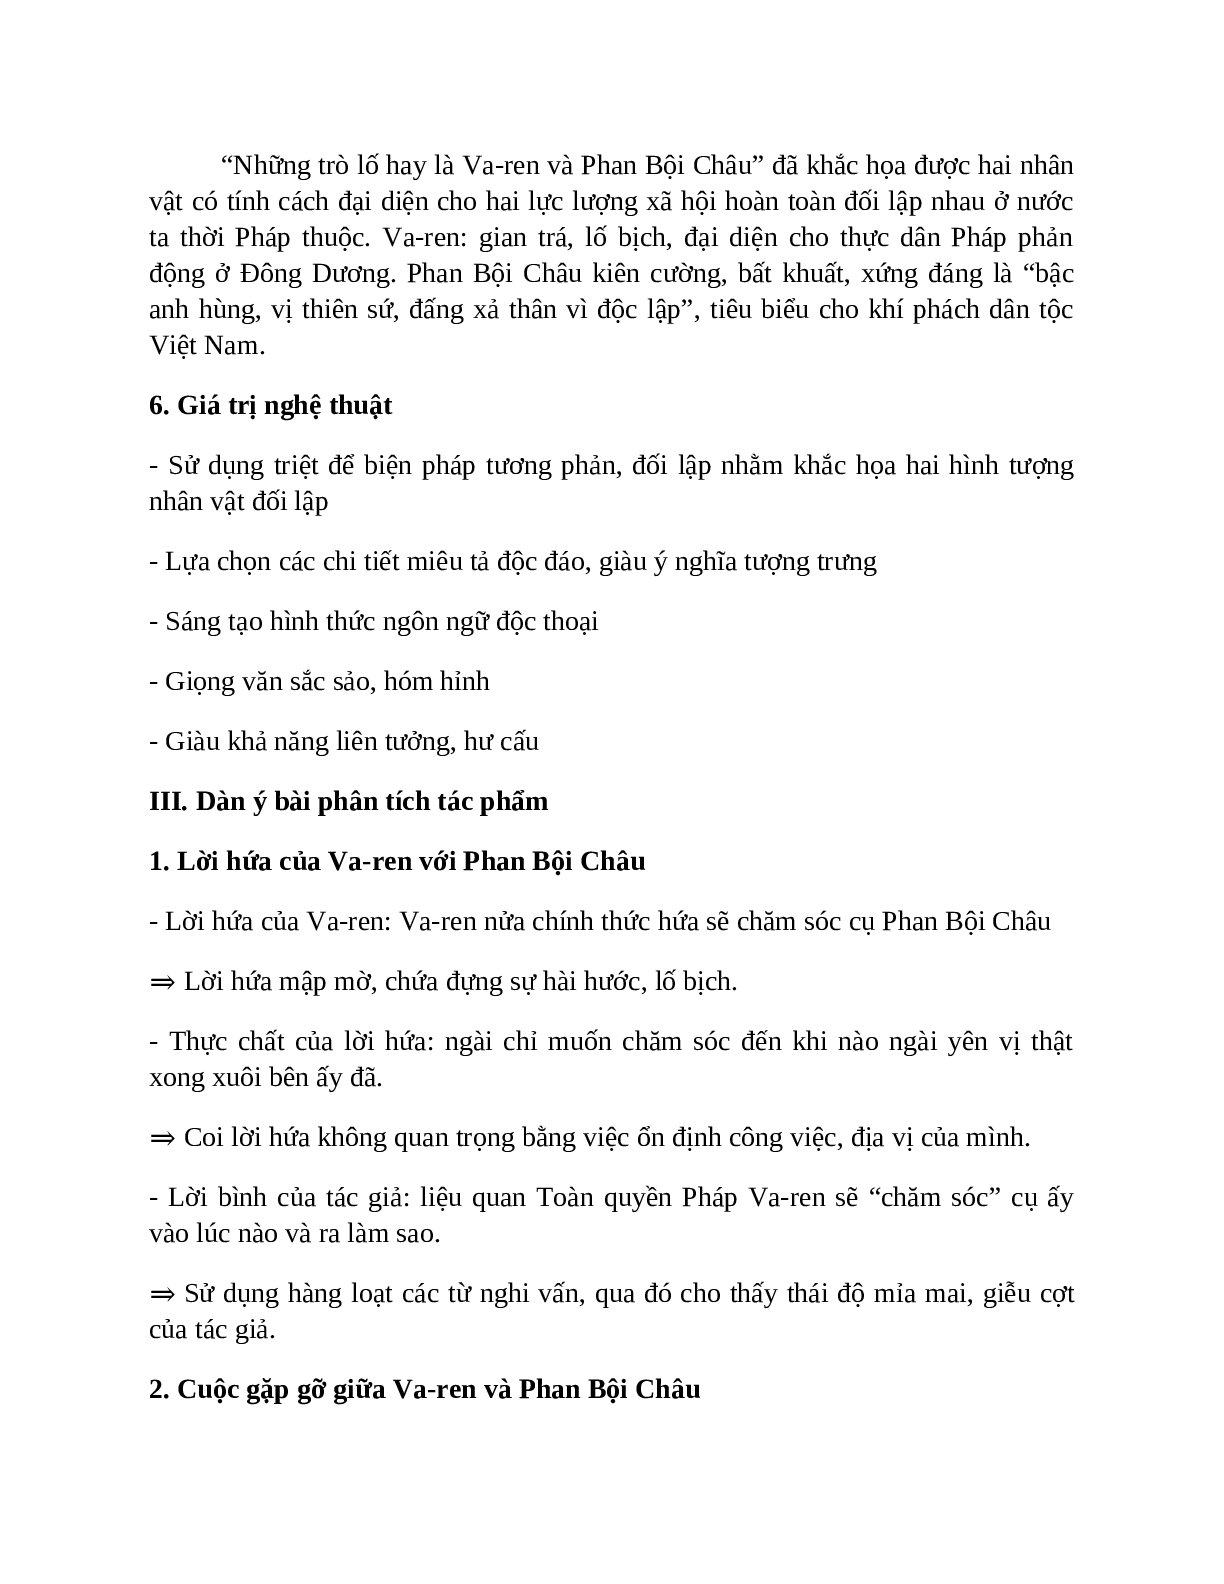 Sơ đồ tư duy bài Những trò lố hay là Varen và Phan Bội Châu dễ nhớ, ngắn nhất - Ngữ văn lớp 7 (trang 3)